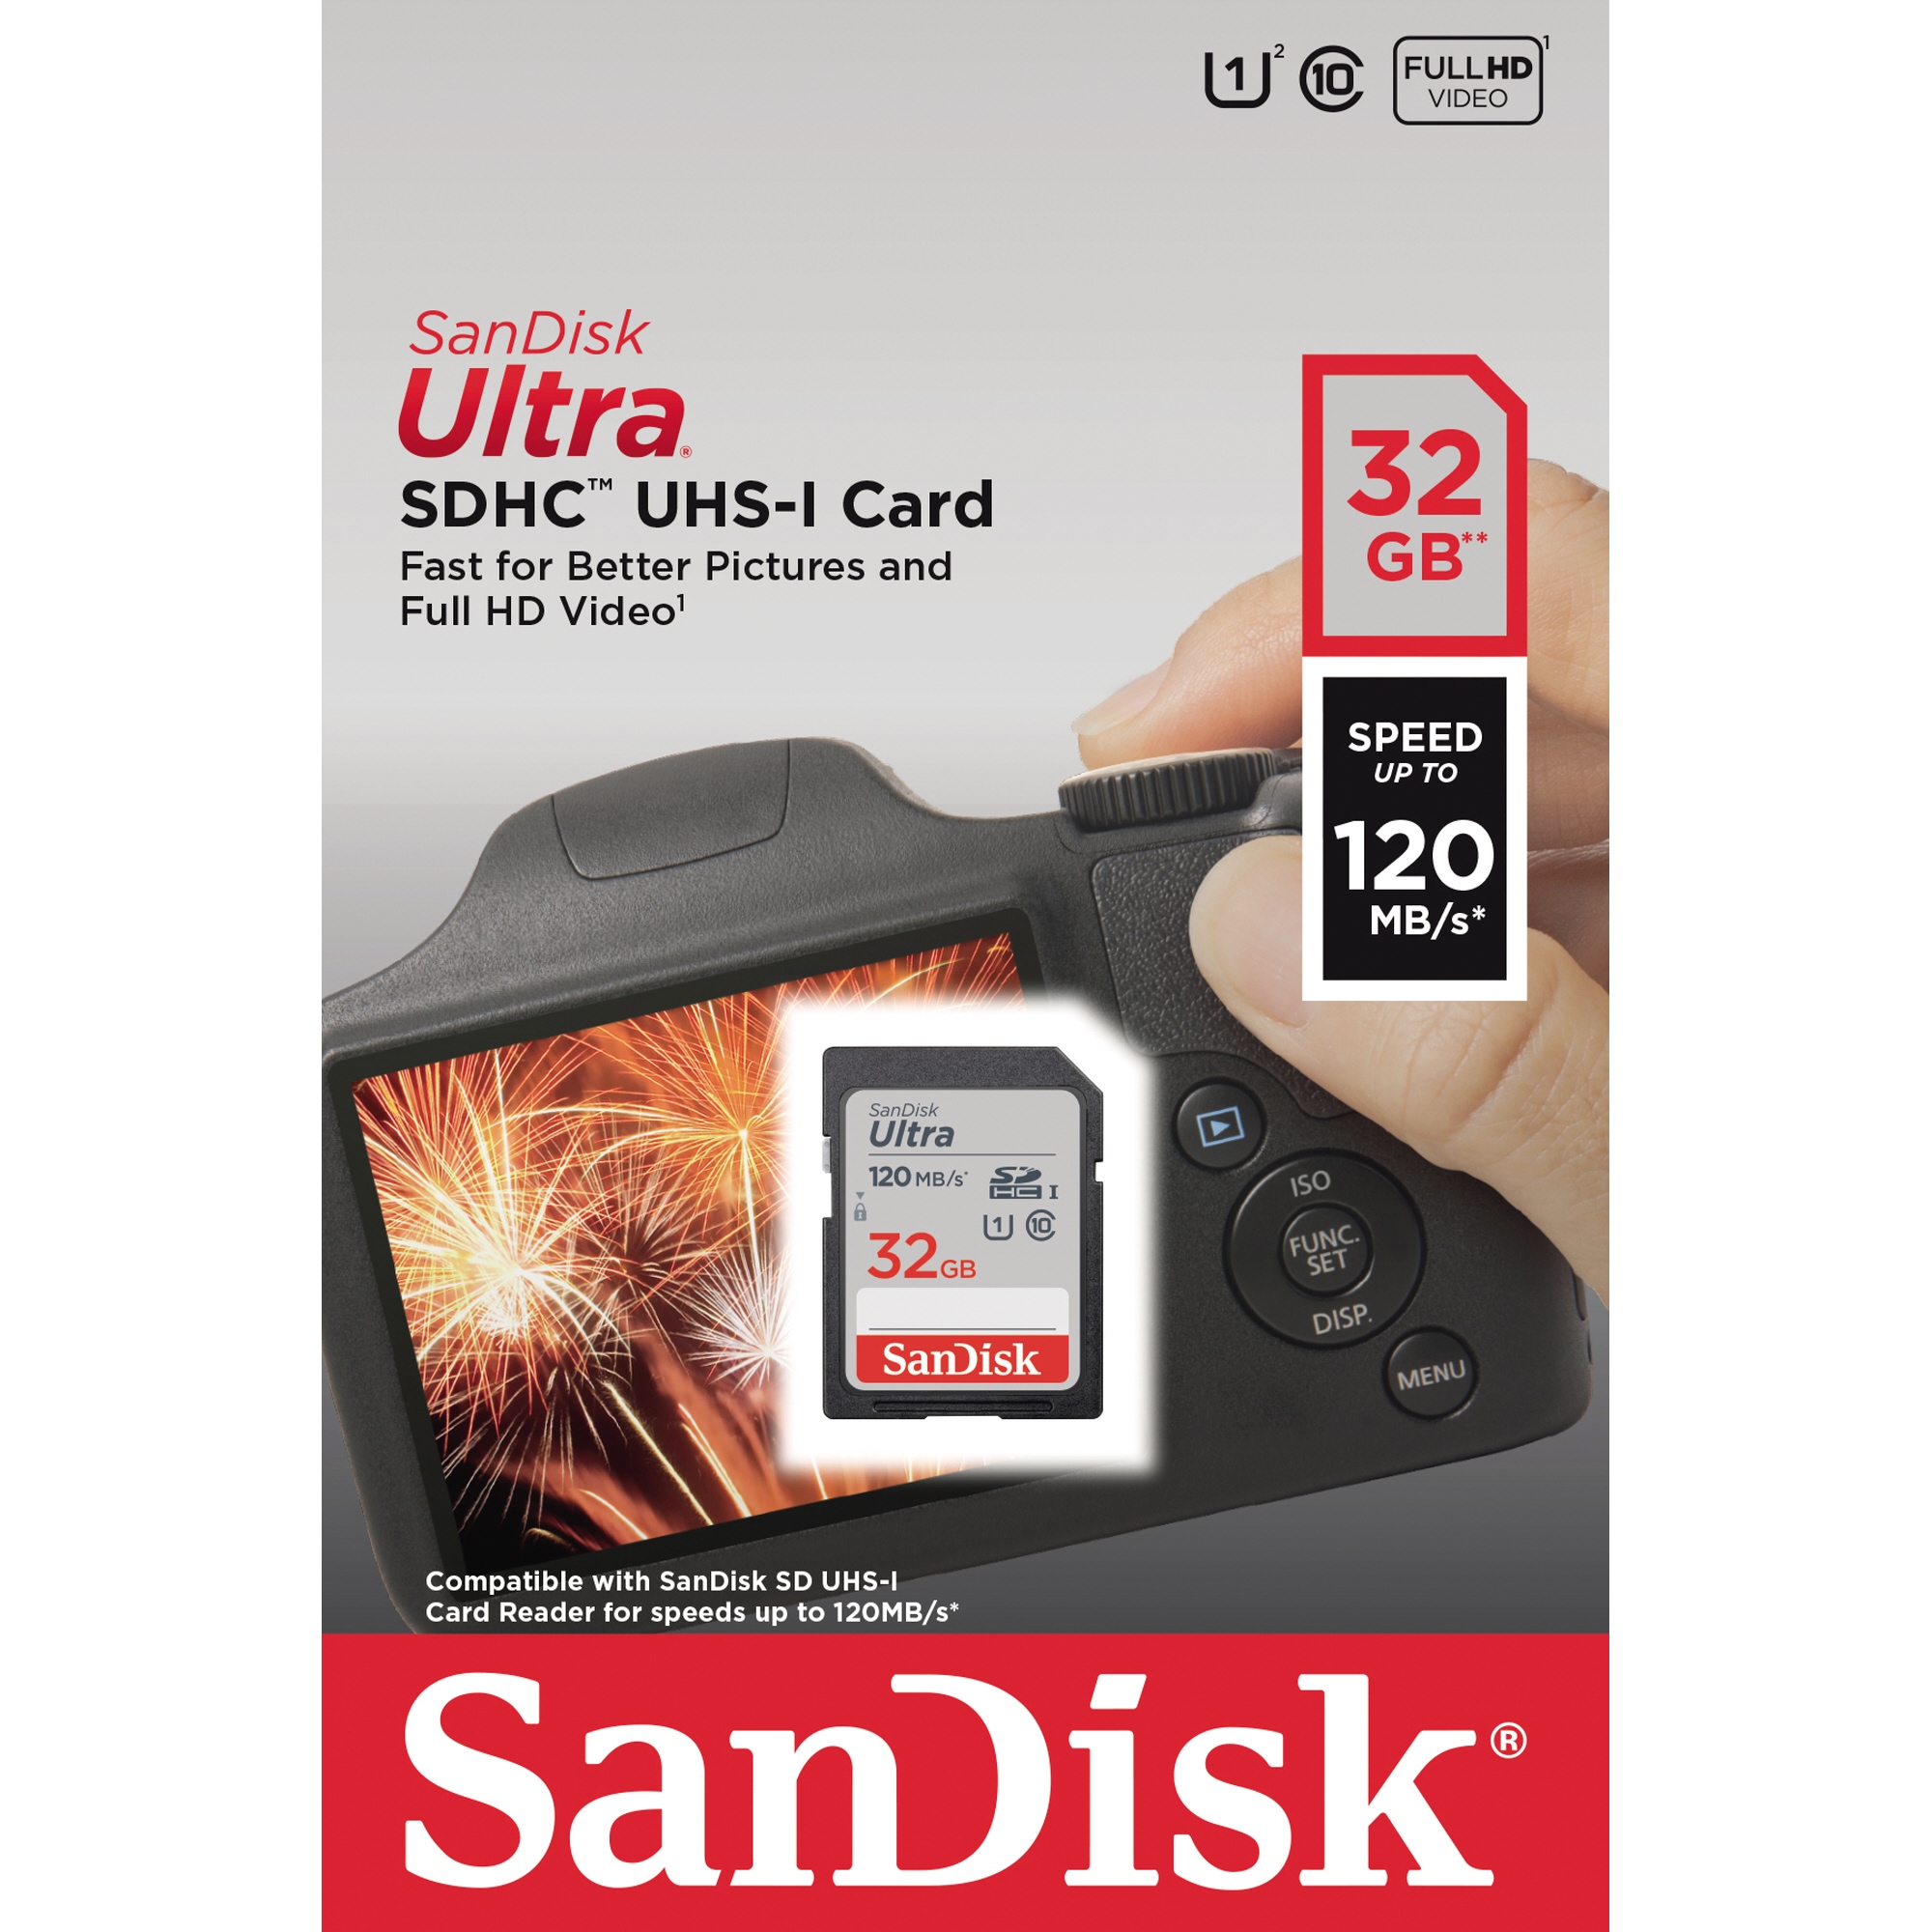 SanDisk Speicherkarte SDSDUN4-032G-GN6IN SDHC 32GB